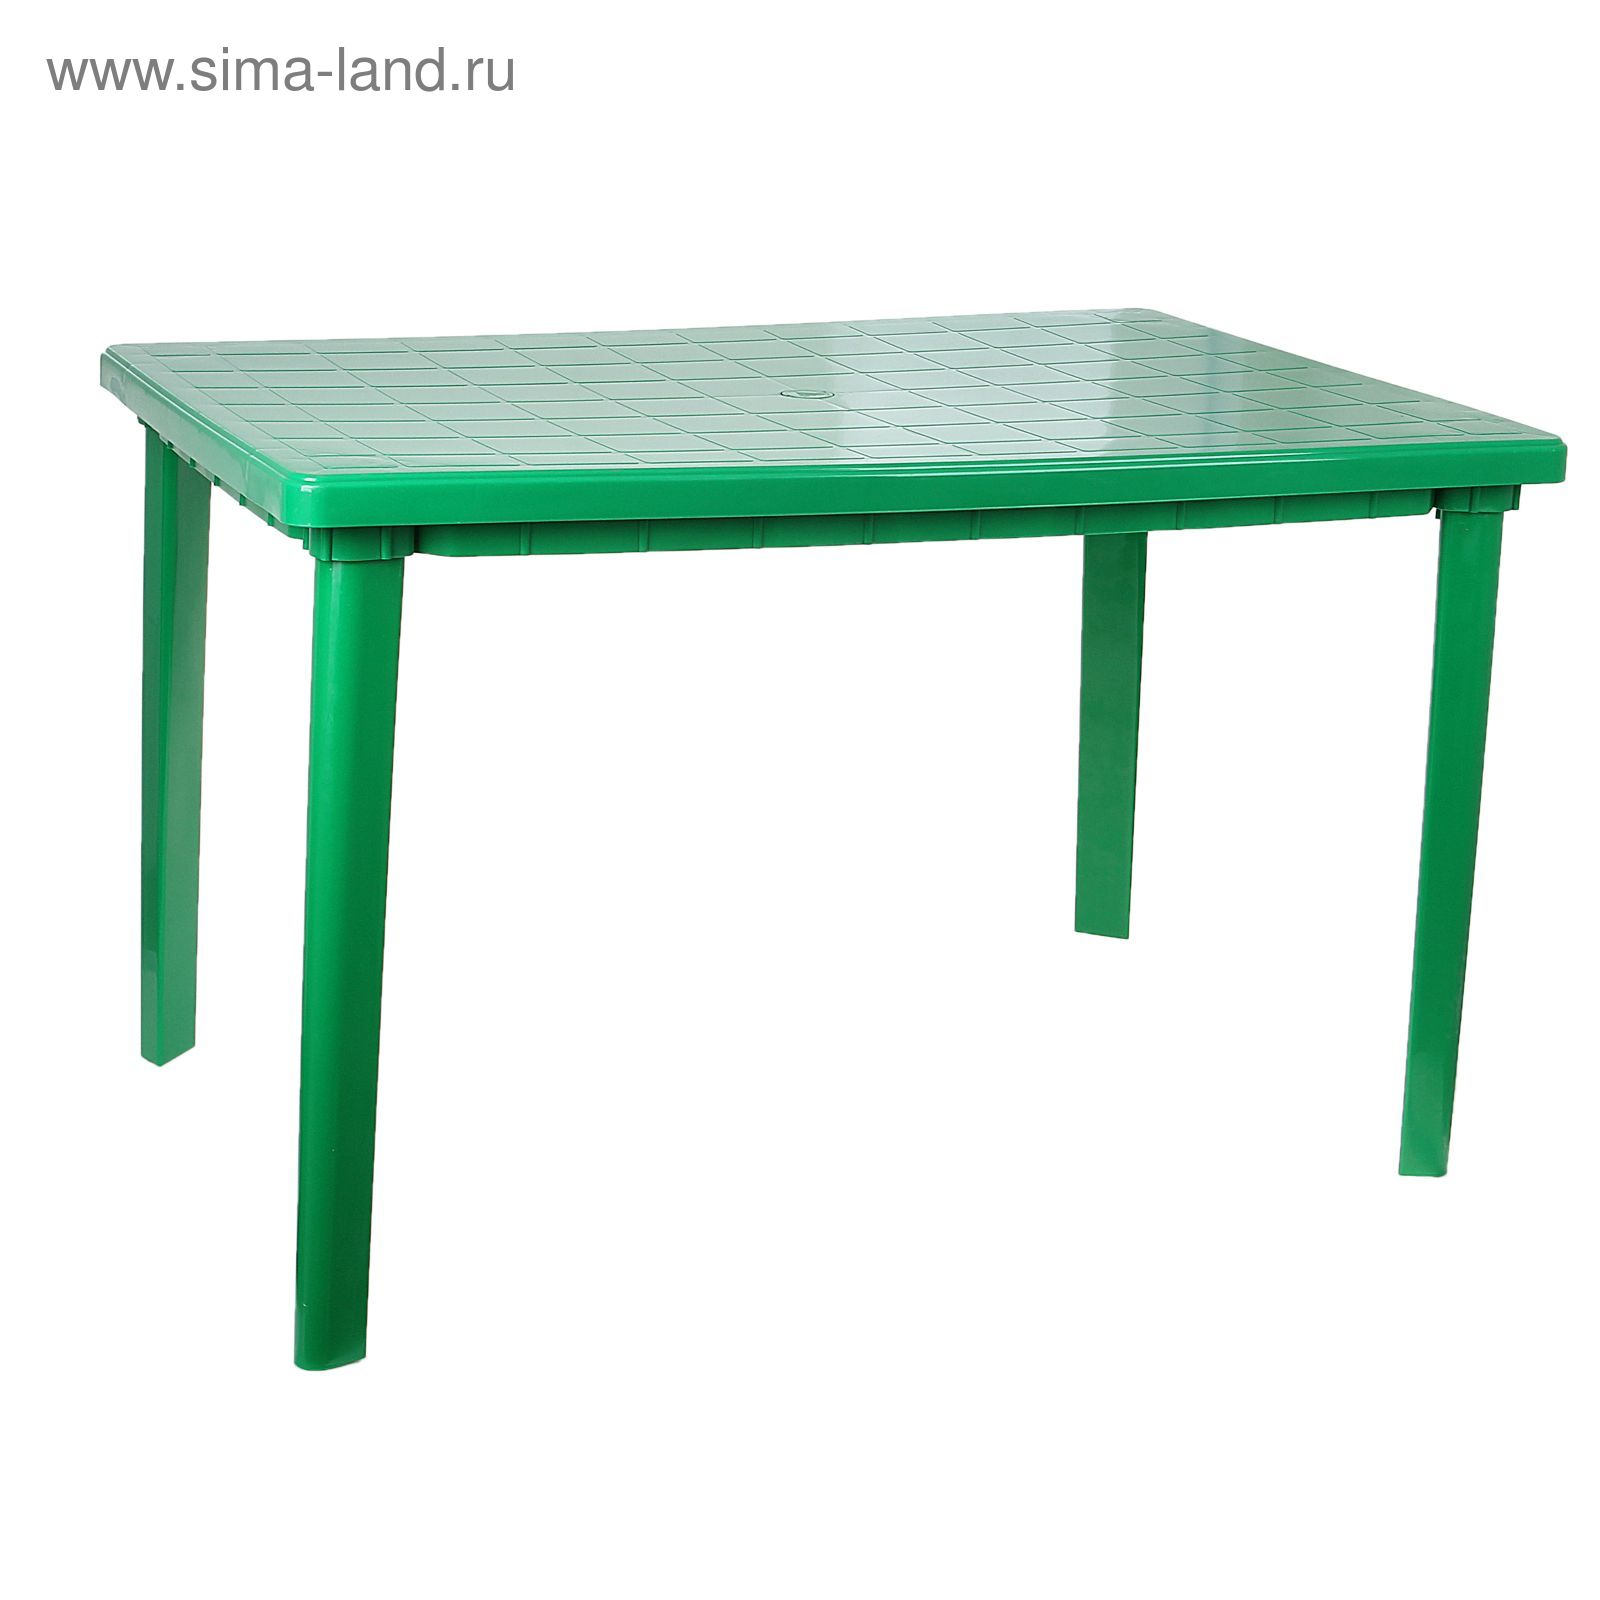 стол садовый пластиковый прямоугольный складной